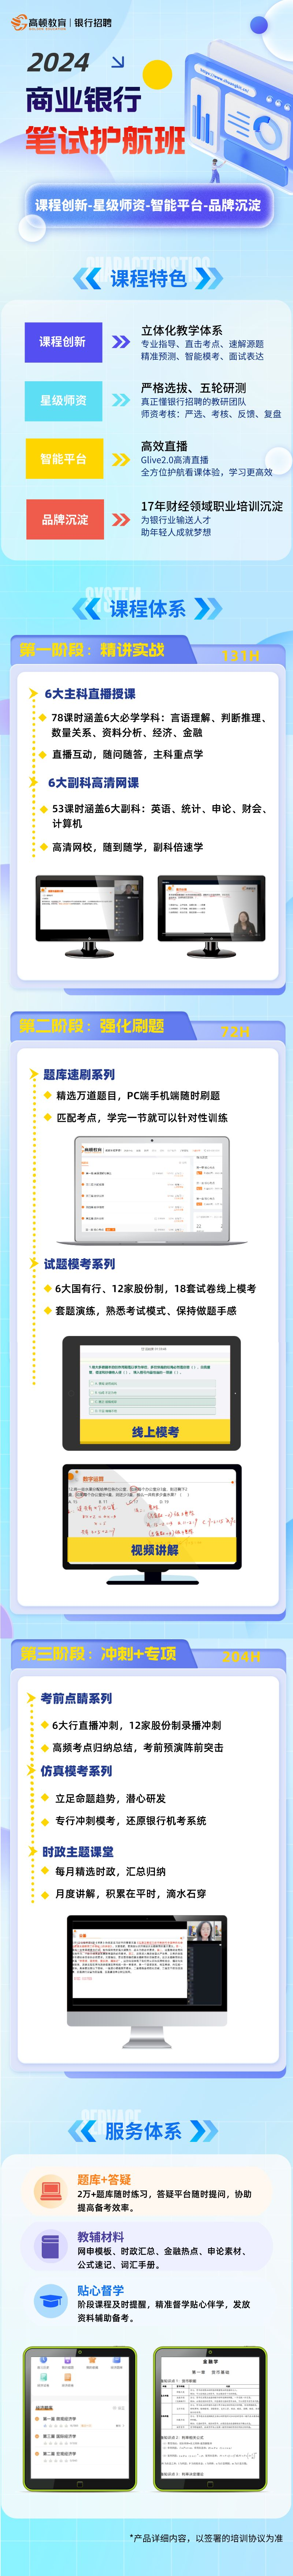 https://simg01.gaodunwangxiao.com/uploadfiles/product-center/202309/25/84fb8_20230925181057.png